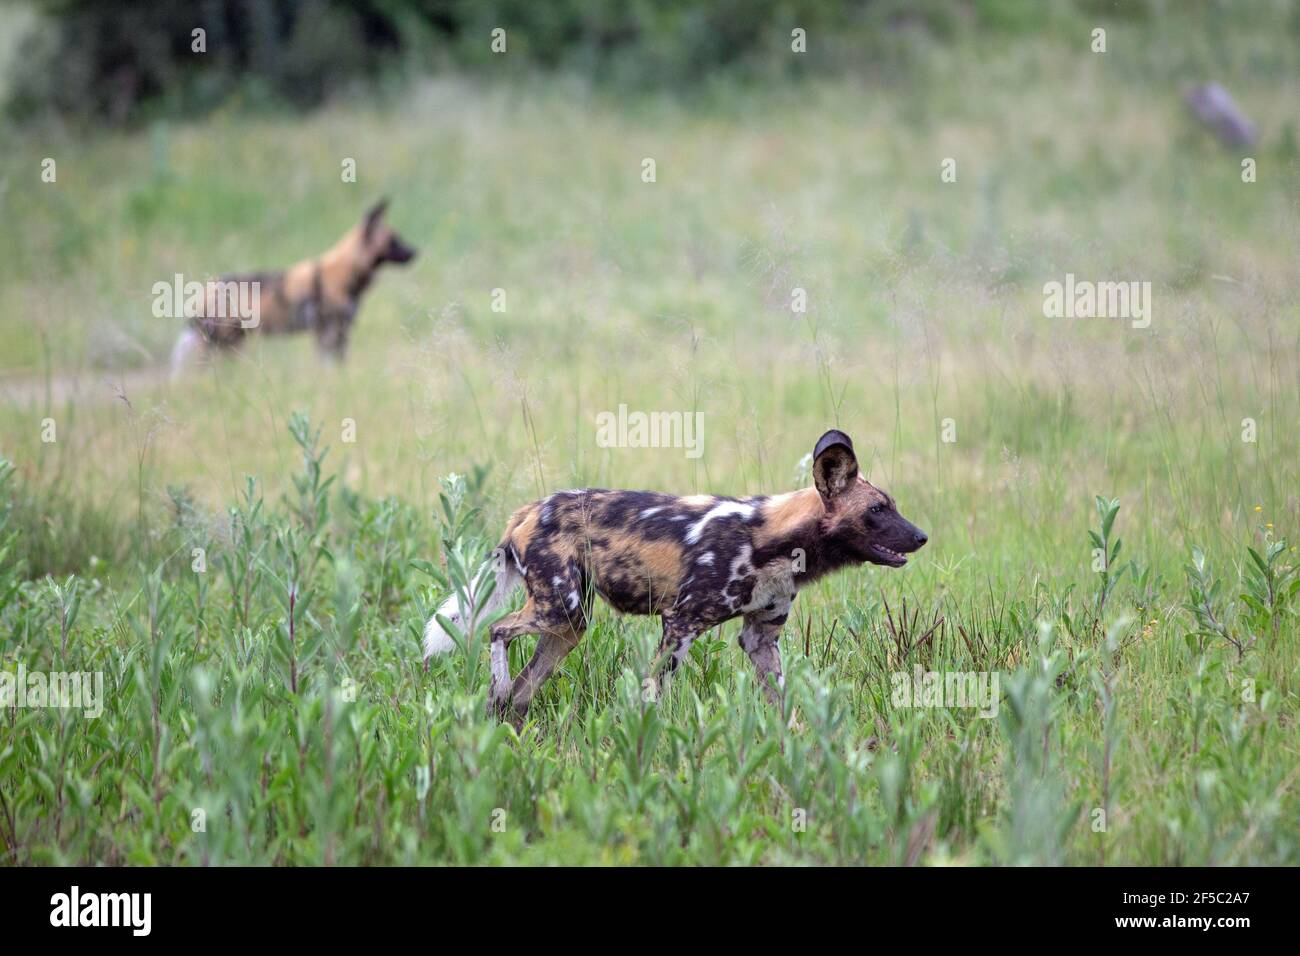 Afrikanische Jagdhunde, bemalte Wölfe (Lycaon pictus). Zwei von einer Gruppe, die sich für gemeinsame Teamansatz Impala Herde als Beute Gegenstände positionieren. Stockfoto